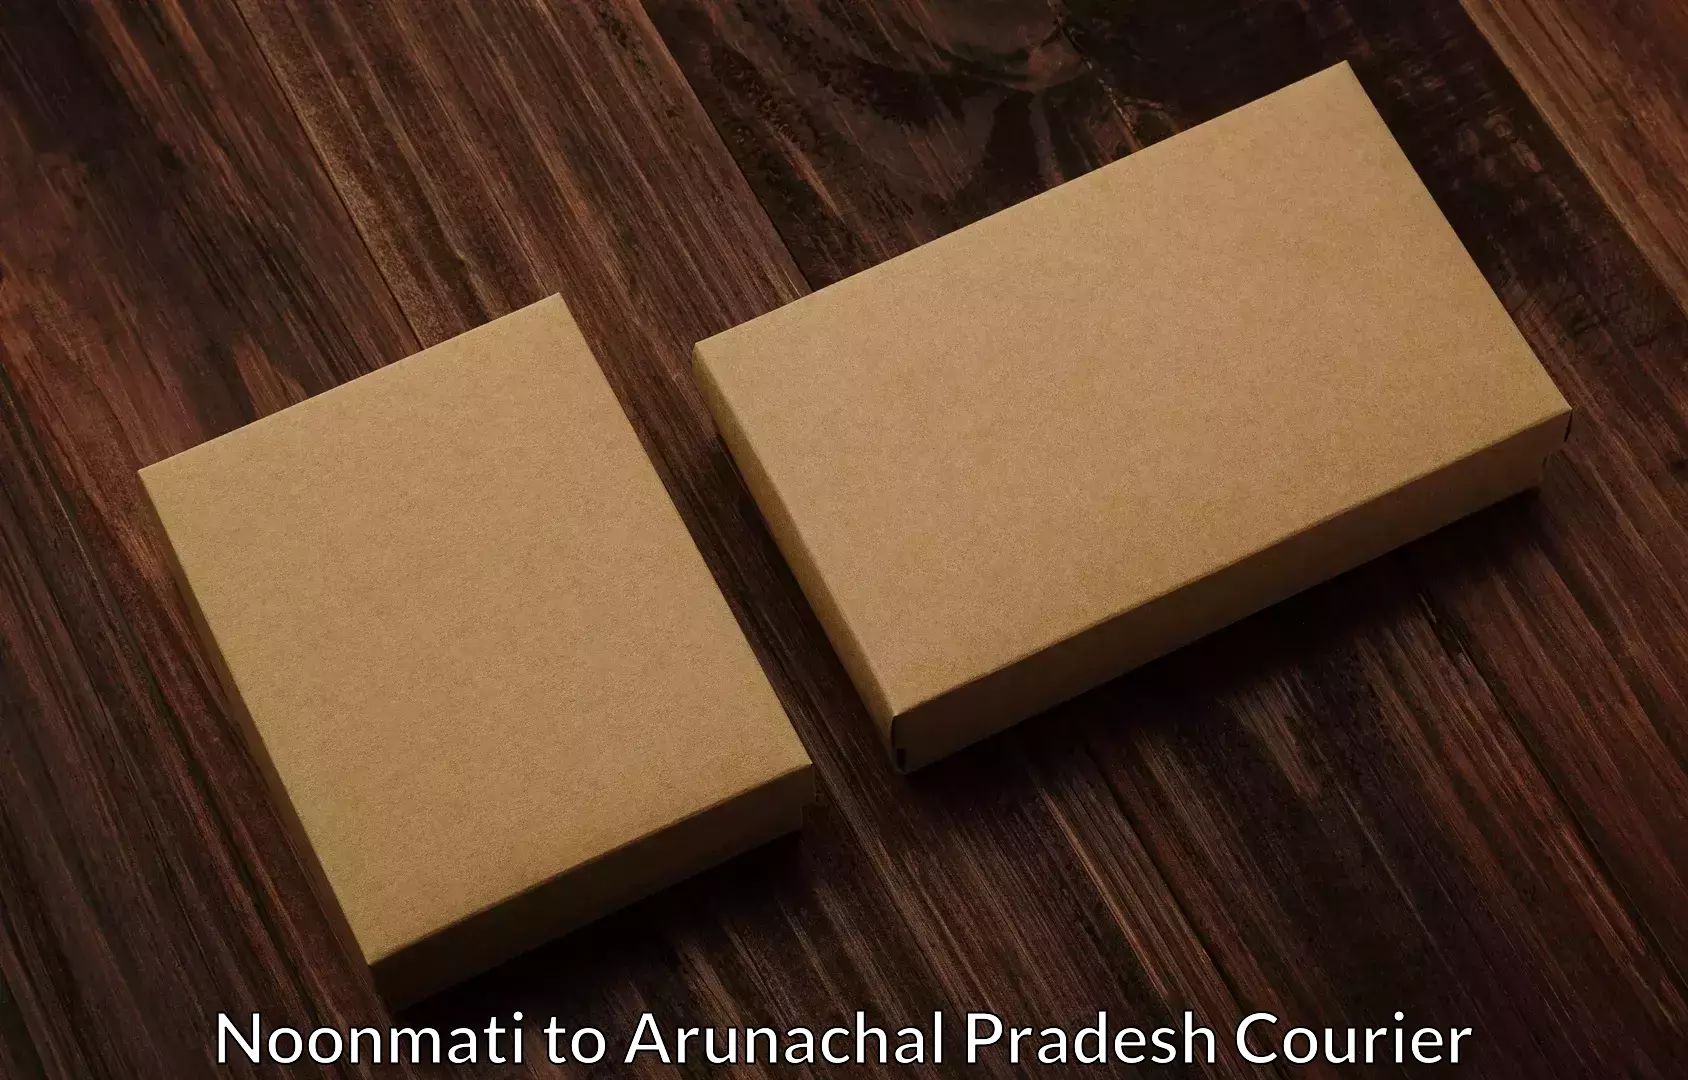 Furniture transport experts Noonmati to Arunachal Pradesh